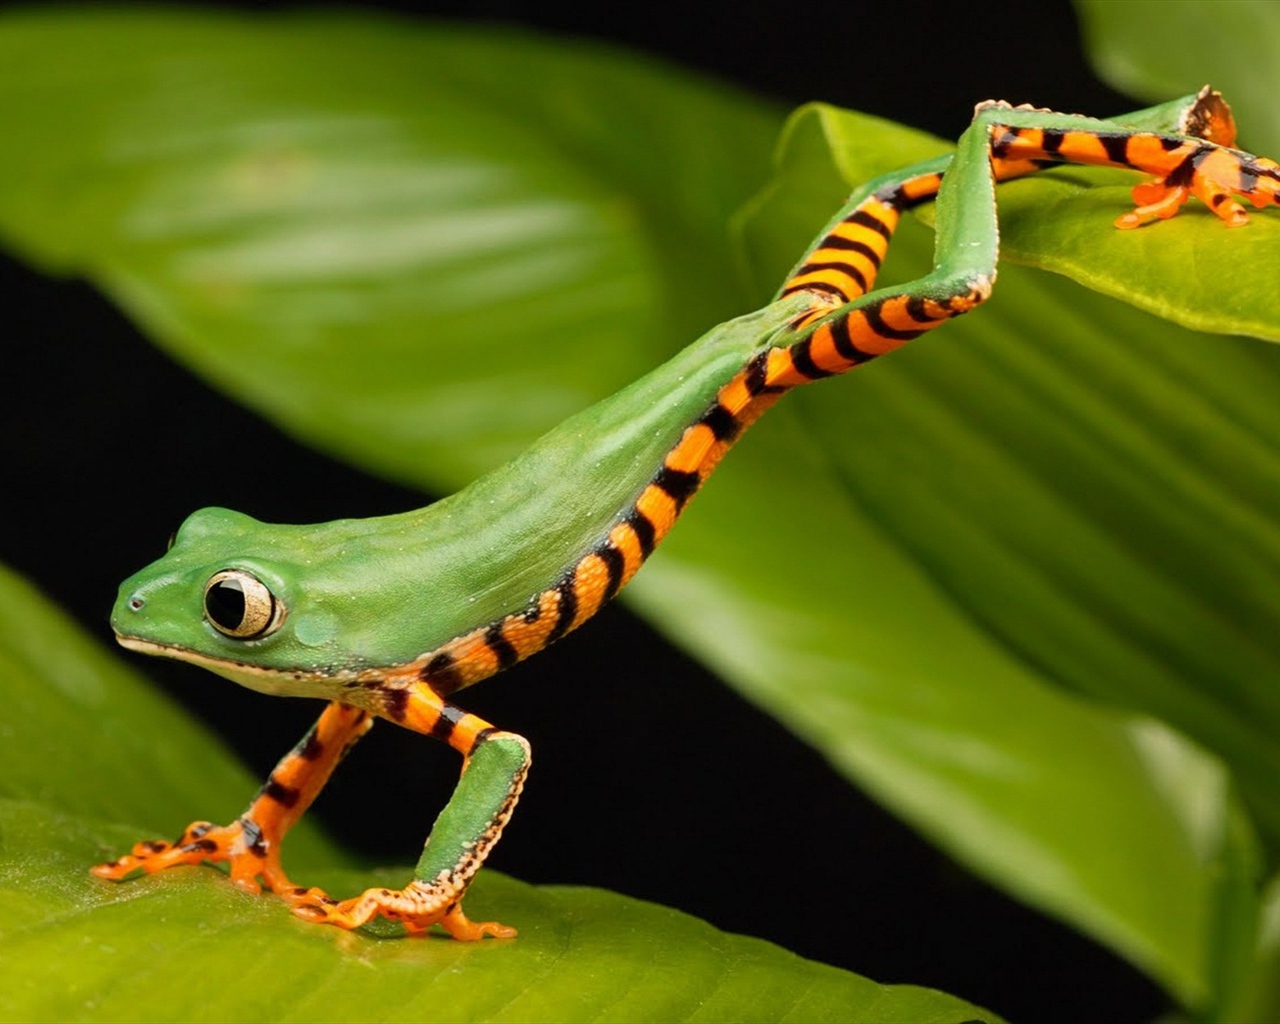 Зеленая лягушка с большими глазами сидит на листе